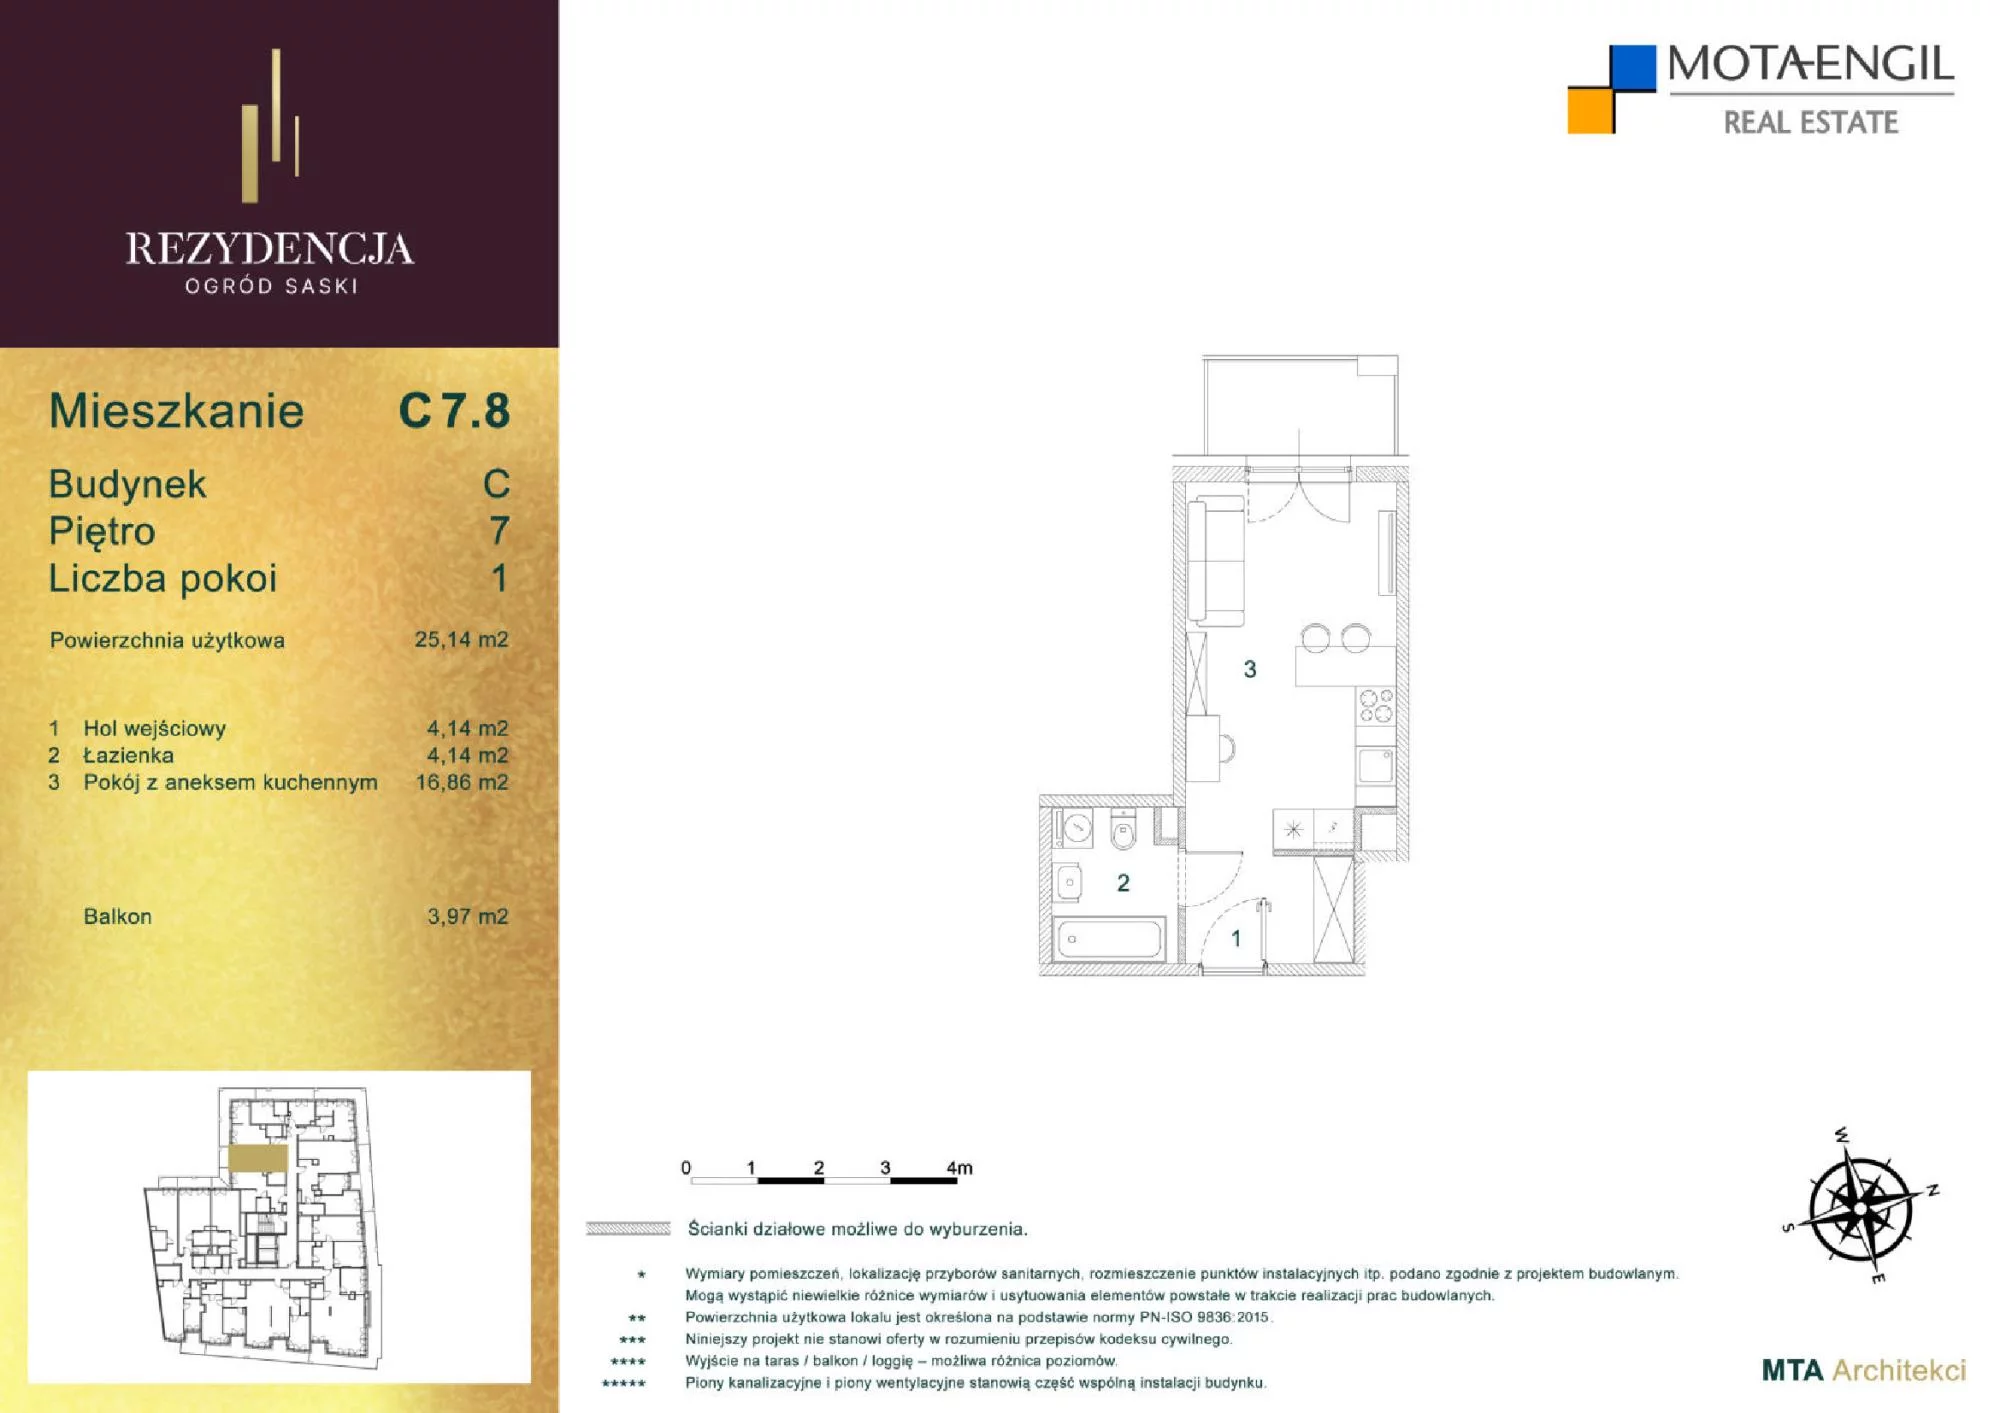 Mieszkanie 25,14 m², piętro 7, oferta nr C7.8, Rezydencja Ogród Saski, Lublin, Wieniawa, ul. Jasna 7, 7A